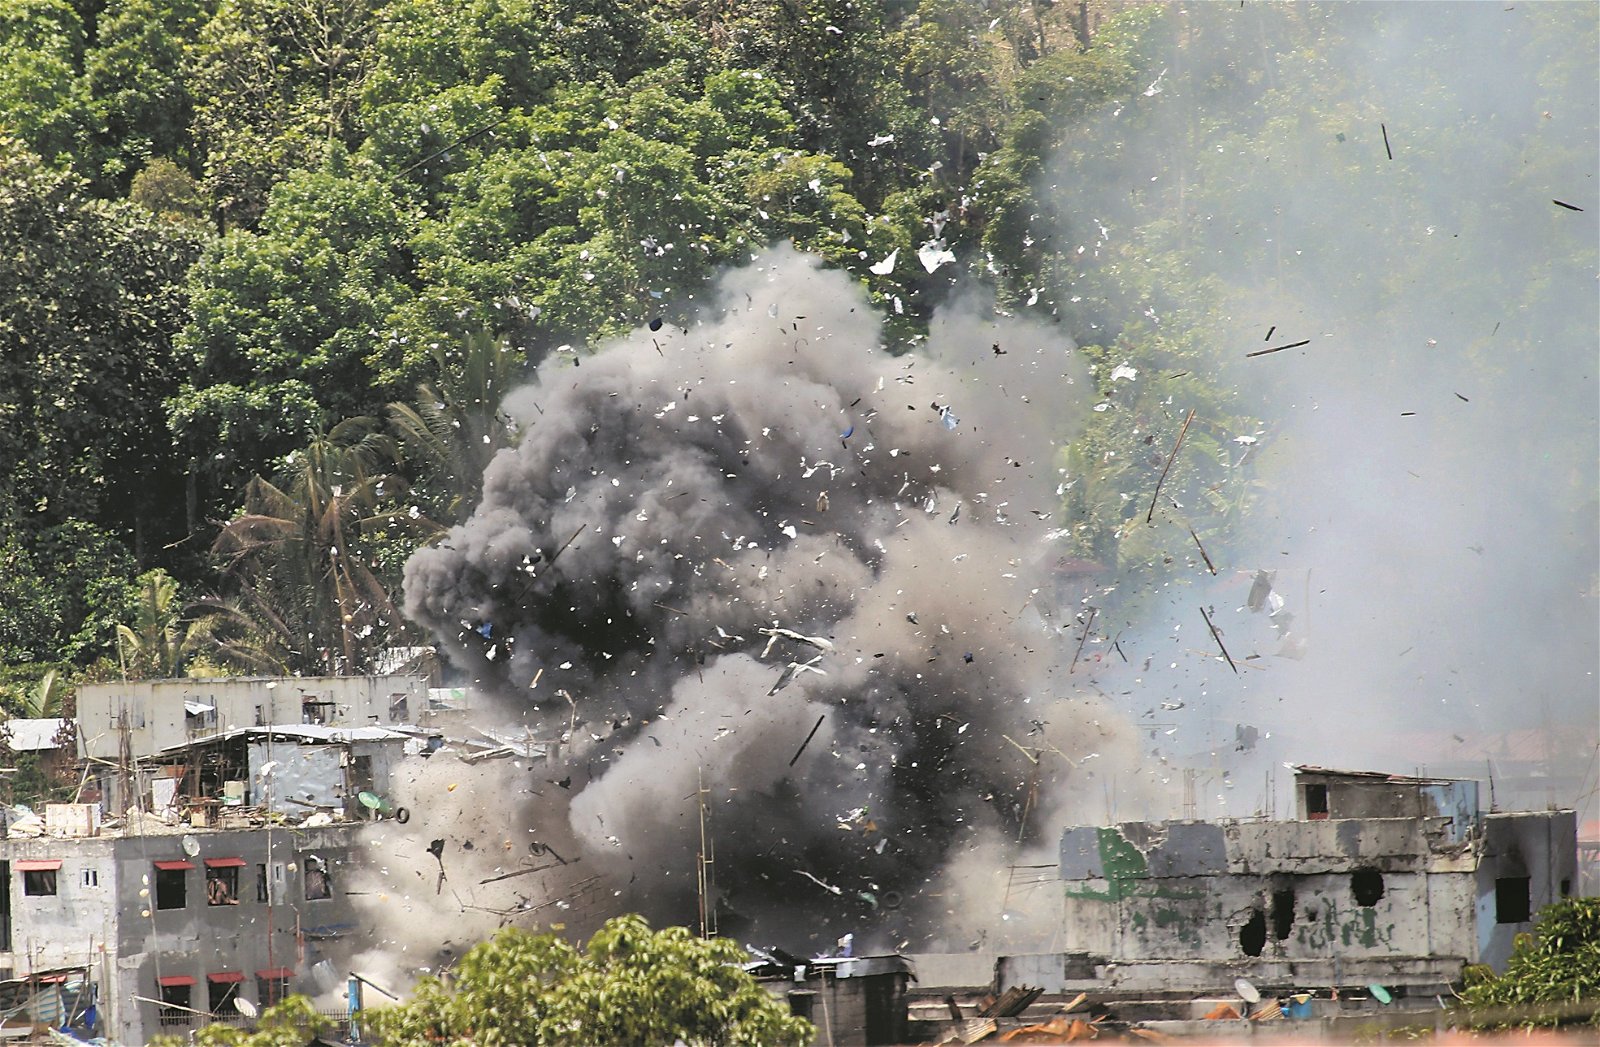 菲律宾政府军攻击型侦察机的导弹，击中地面的建筑，瓦砾和碎片被炸飞，现场冒出滚滚浓烟。